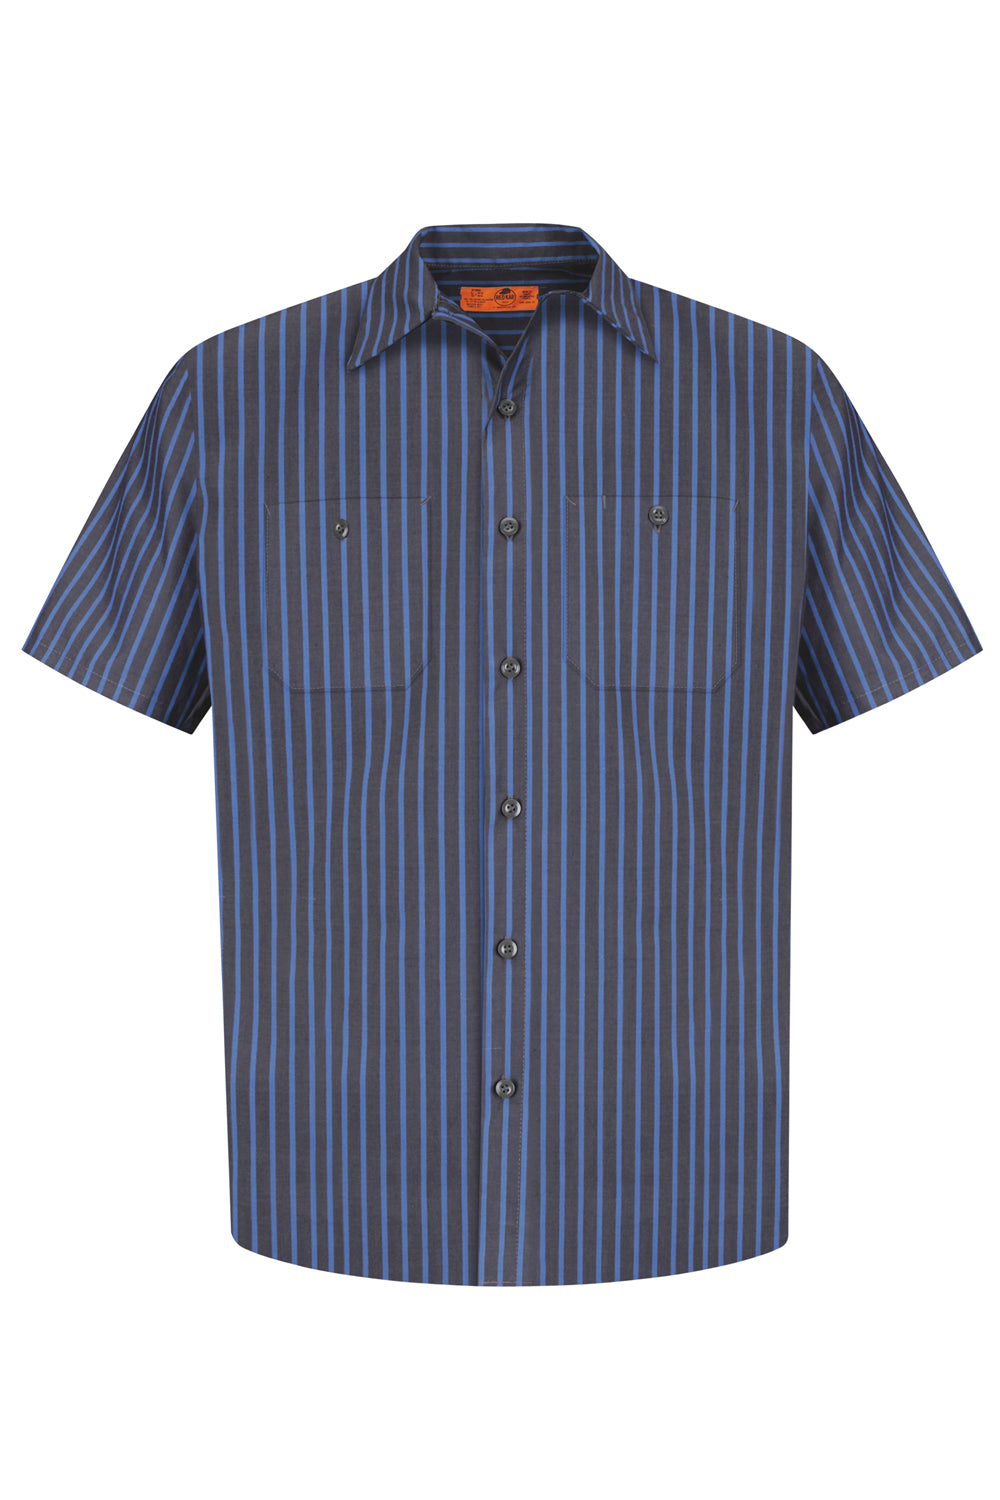 Red Kap CS20/CS20LONG Mens Industrial Moisture Wicking Short Sleeve Button Down Shirt w/ Double Pockets Grey/Blue Flat Front